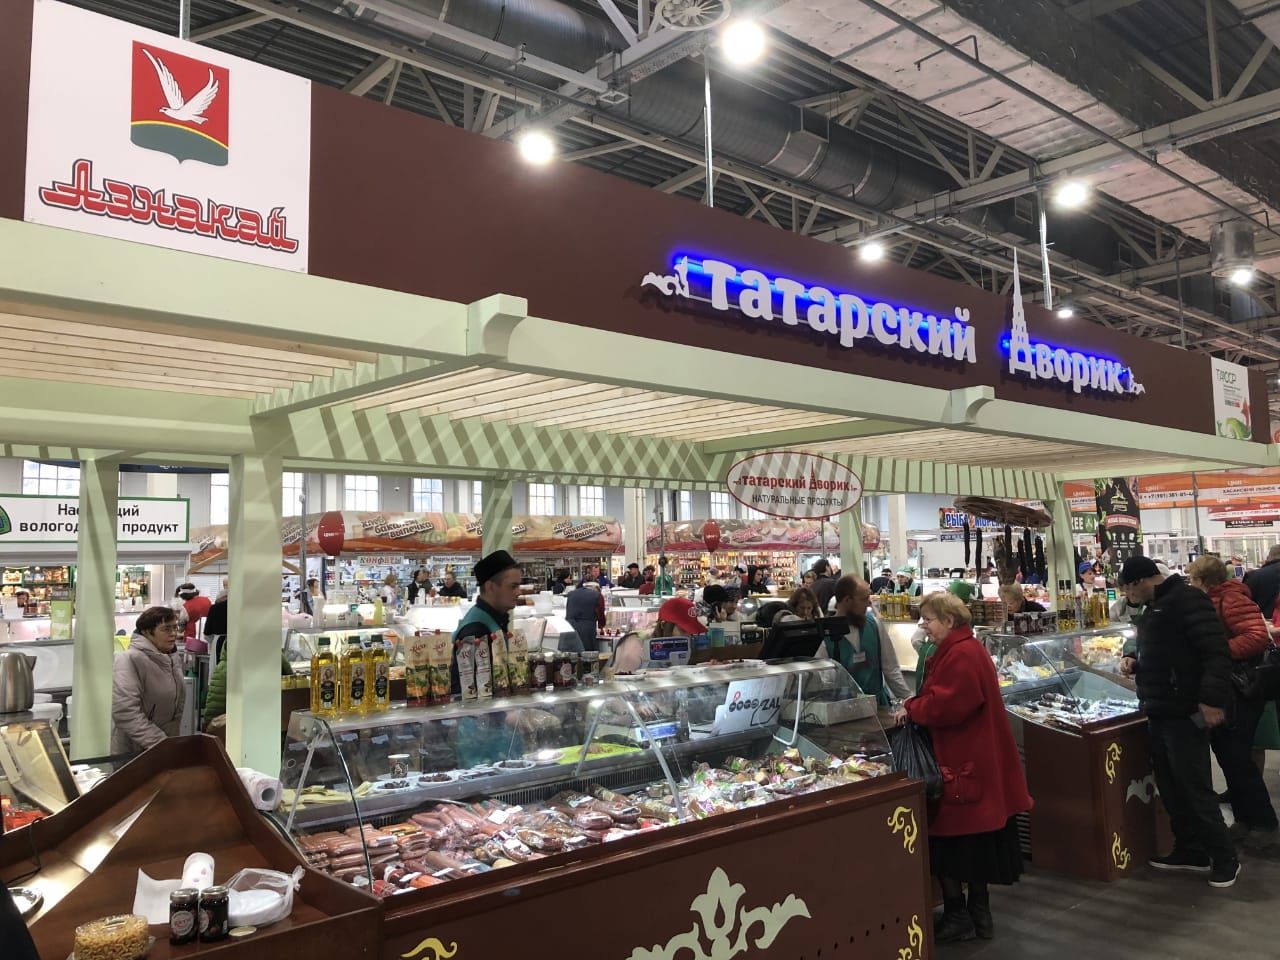 В Санкт-Петербурге открылся «Татарский дворик» с экологически-чистой и натуральной продукцией фермеров республики